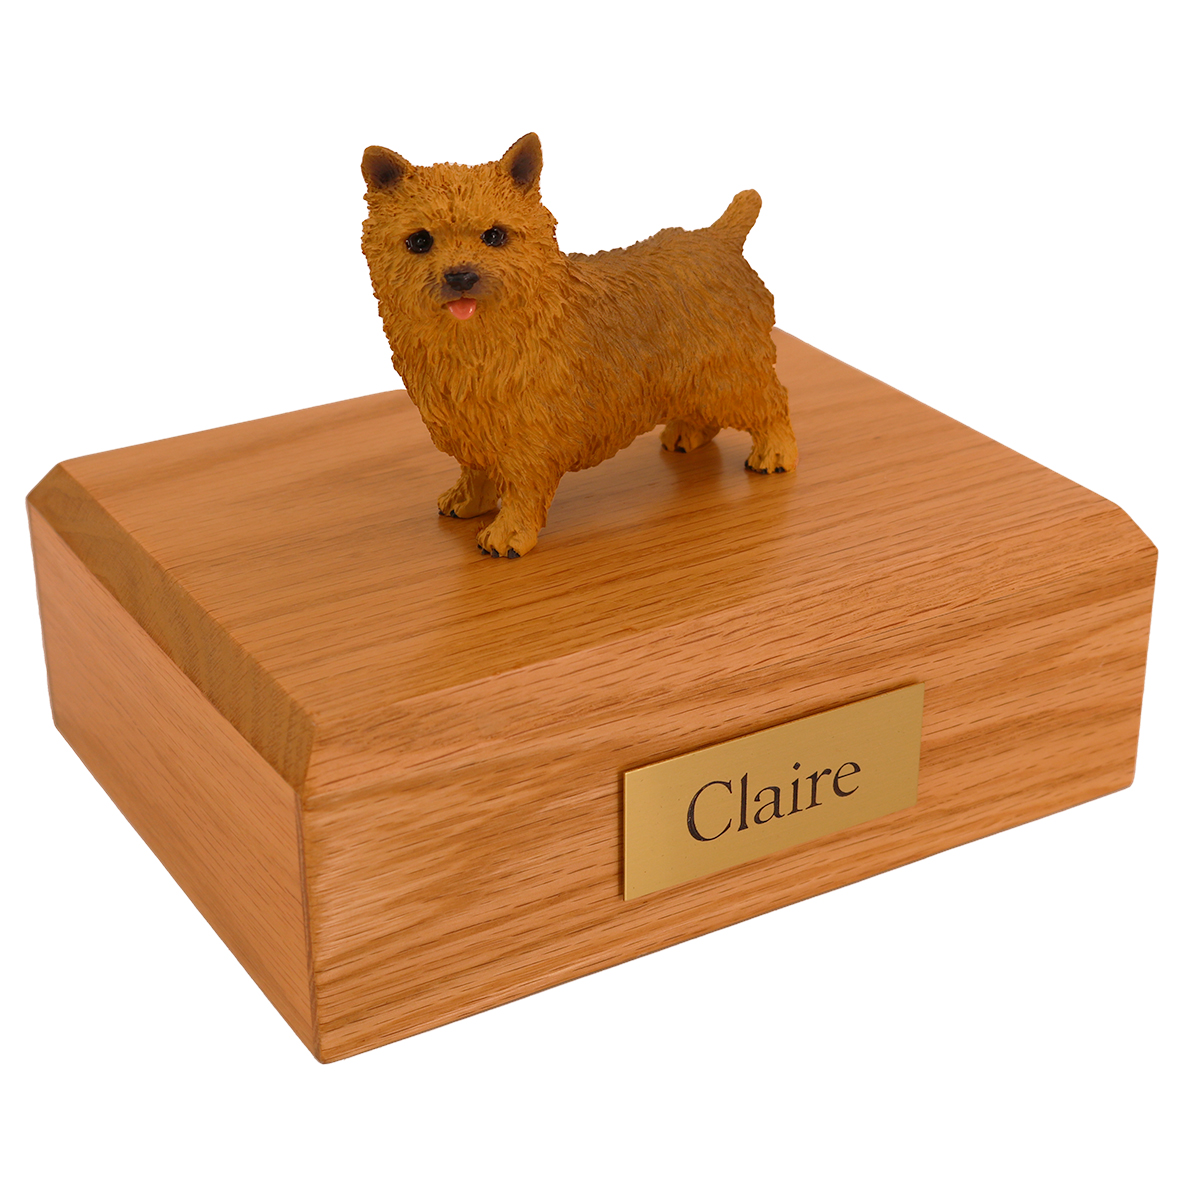 Dog, Norwich Terrier - Figurine Urn